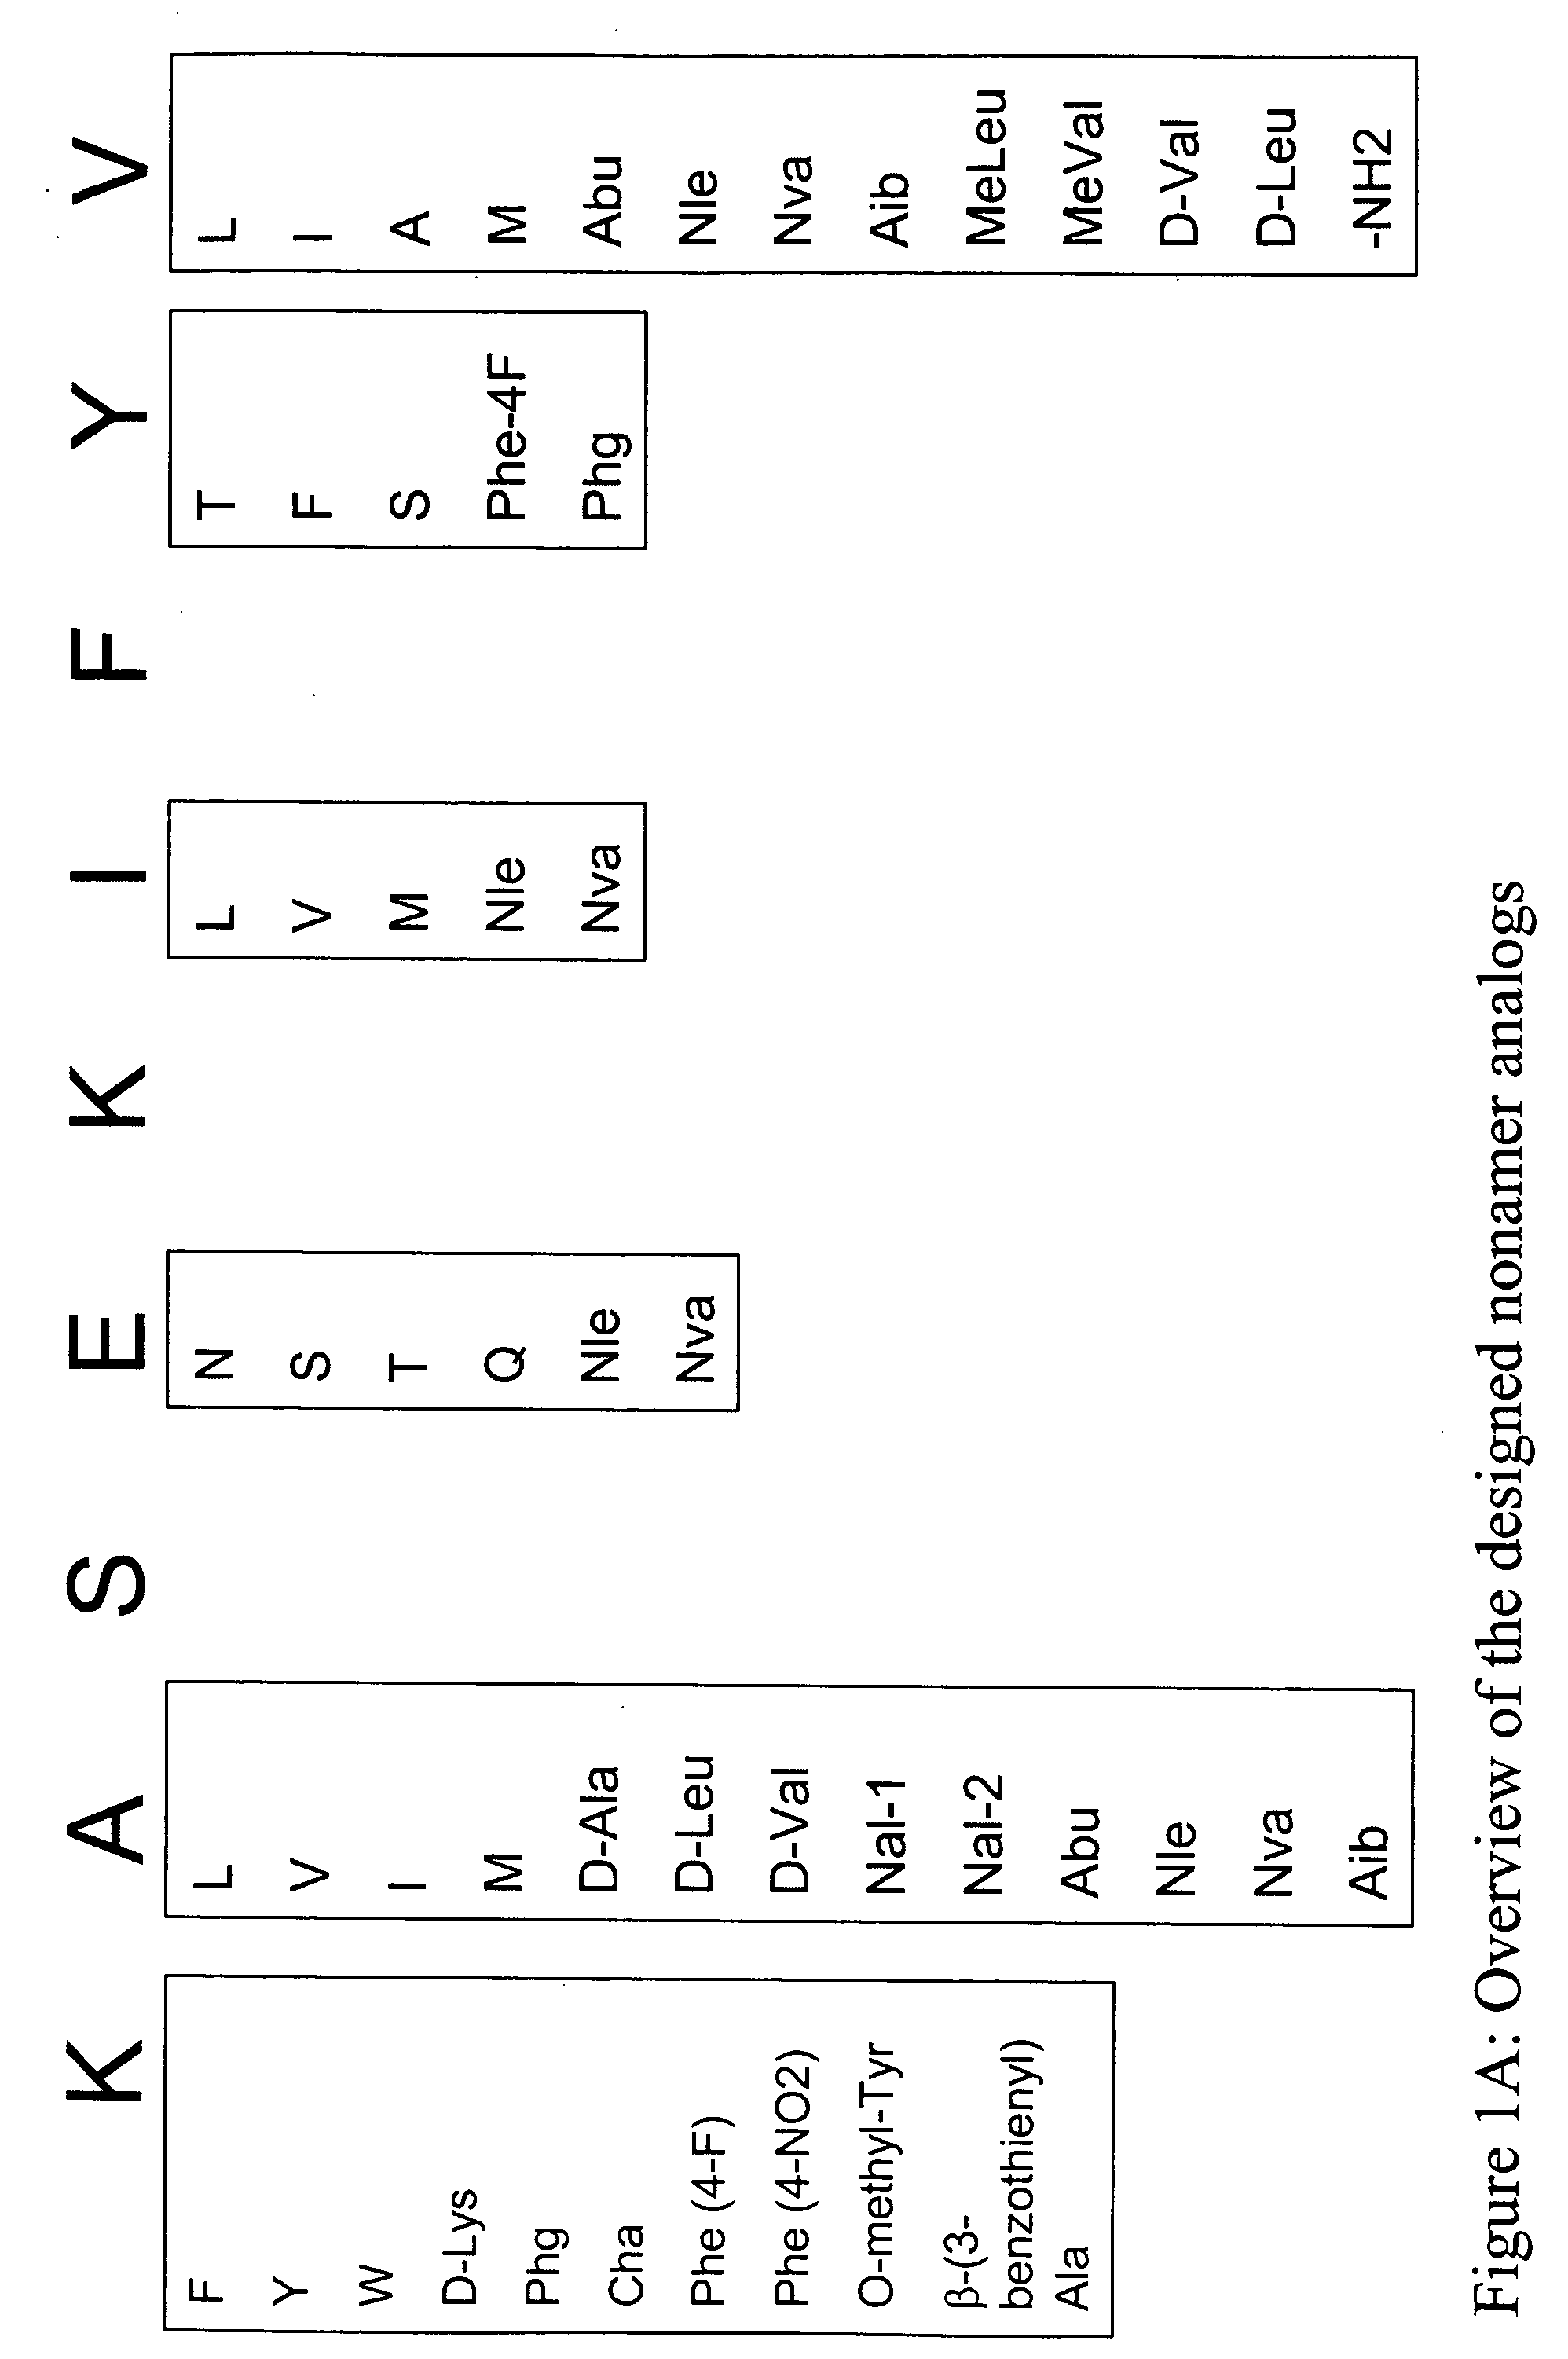 Melanoma antigen peptide analogues